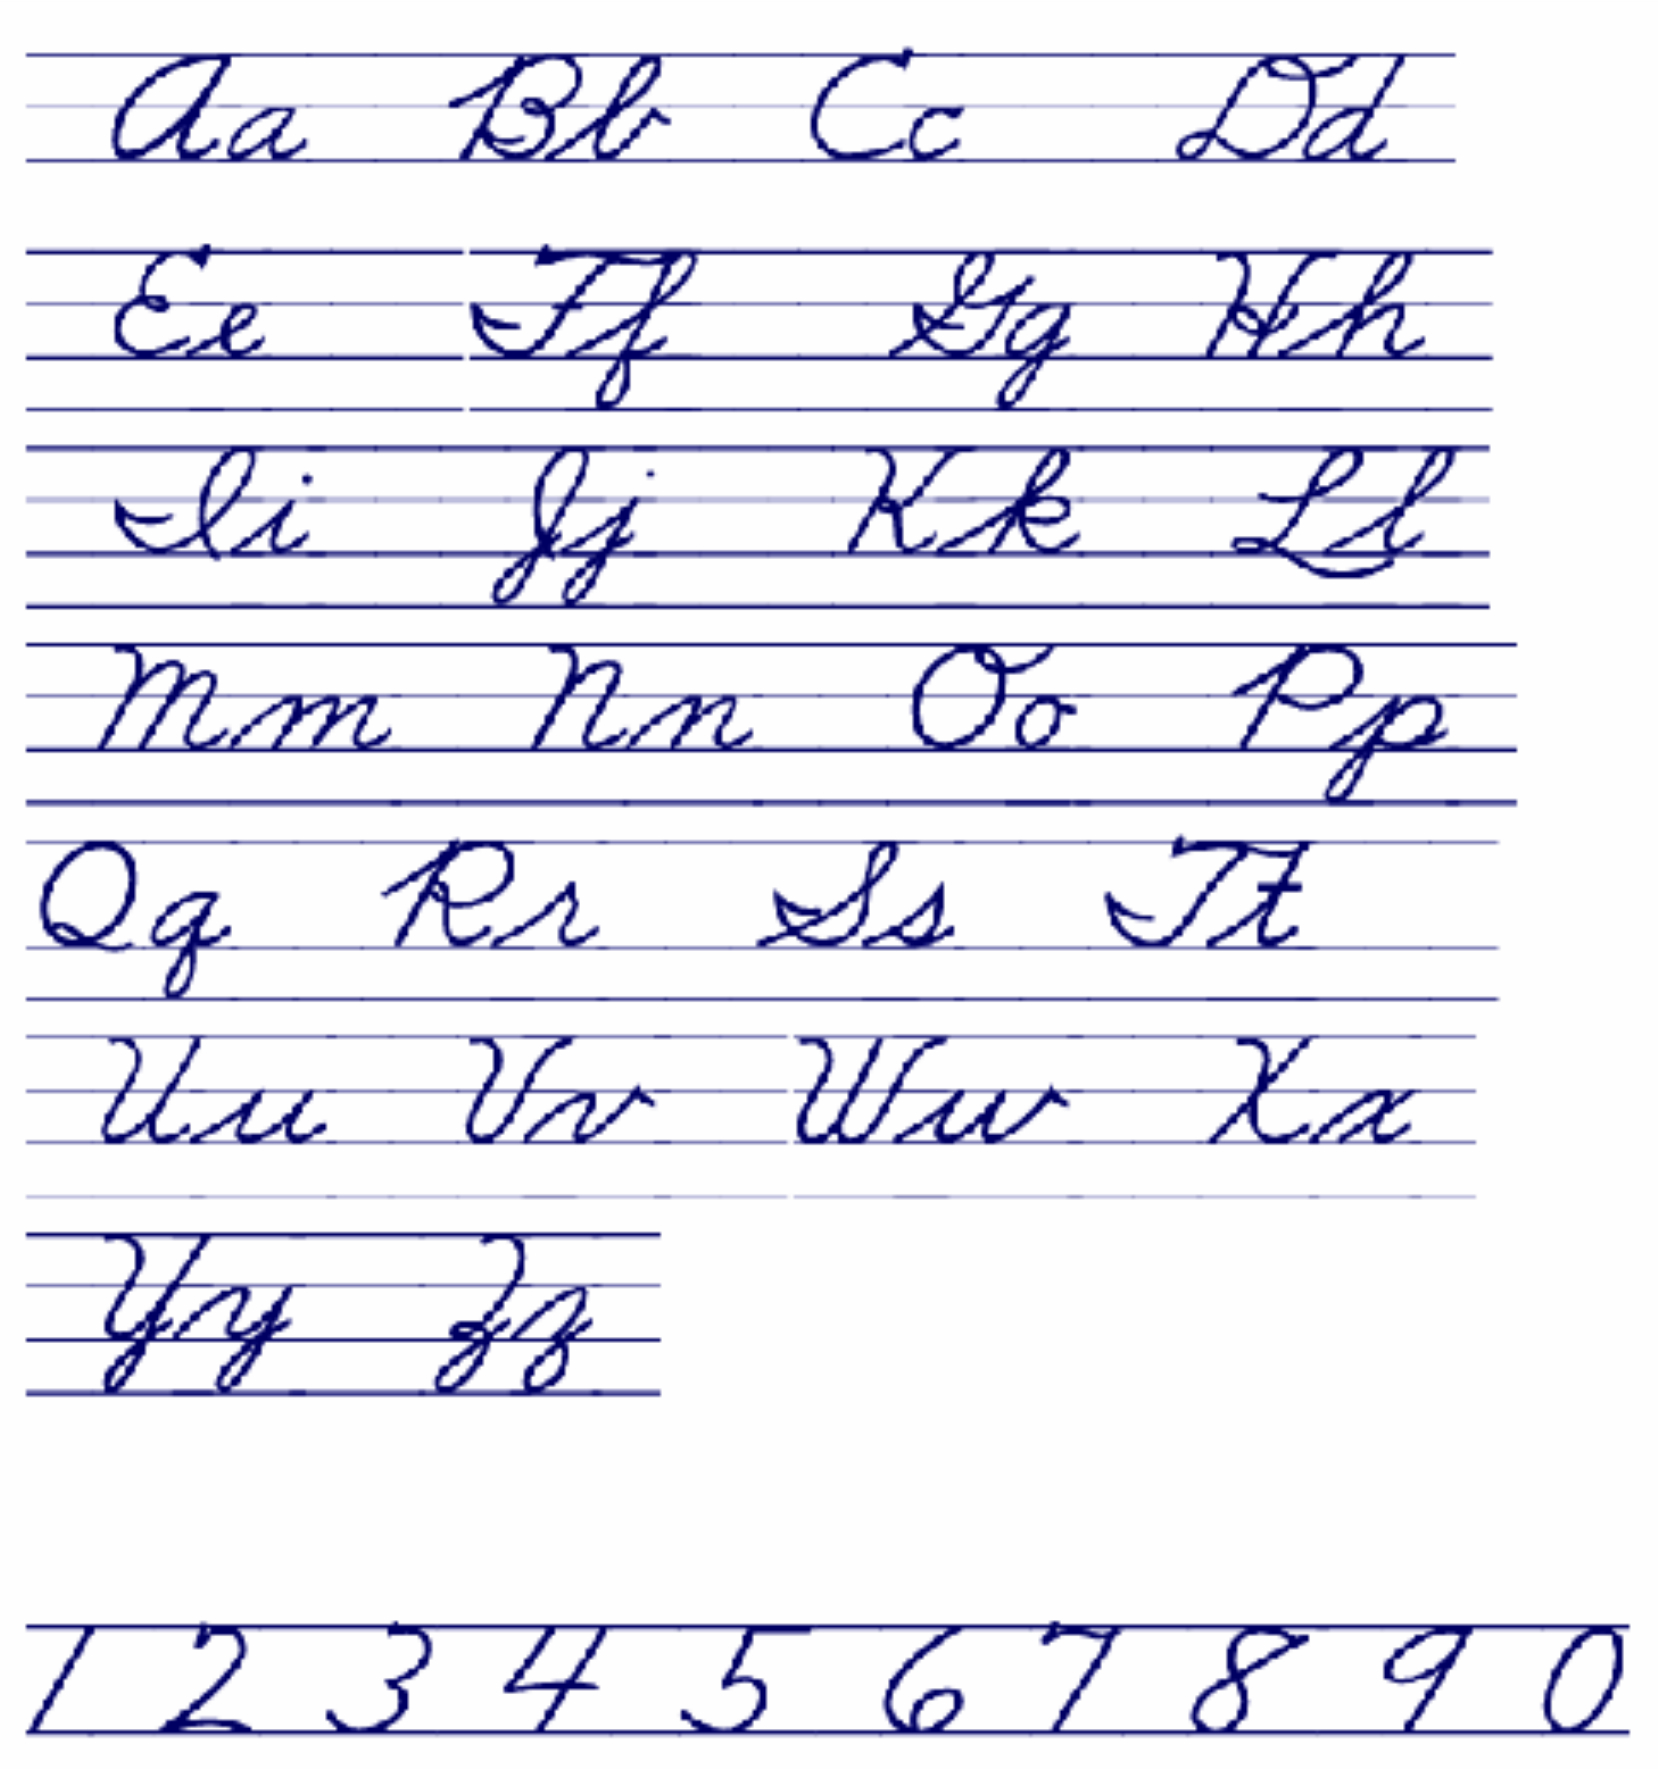 Cursive Alphabet Letters Pdf AlphabetWorksheetsFree